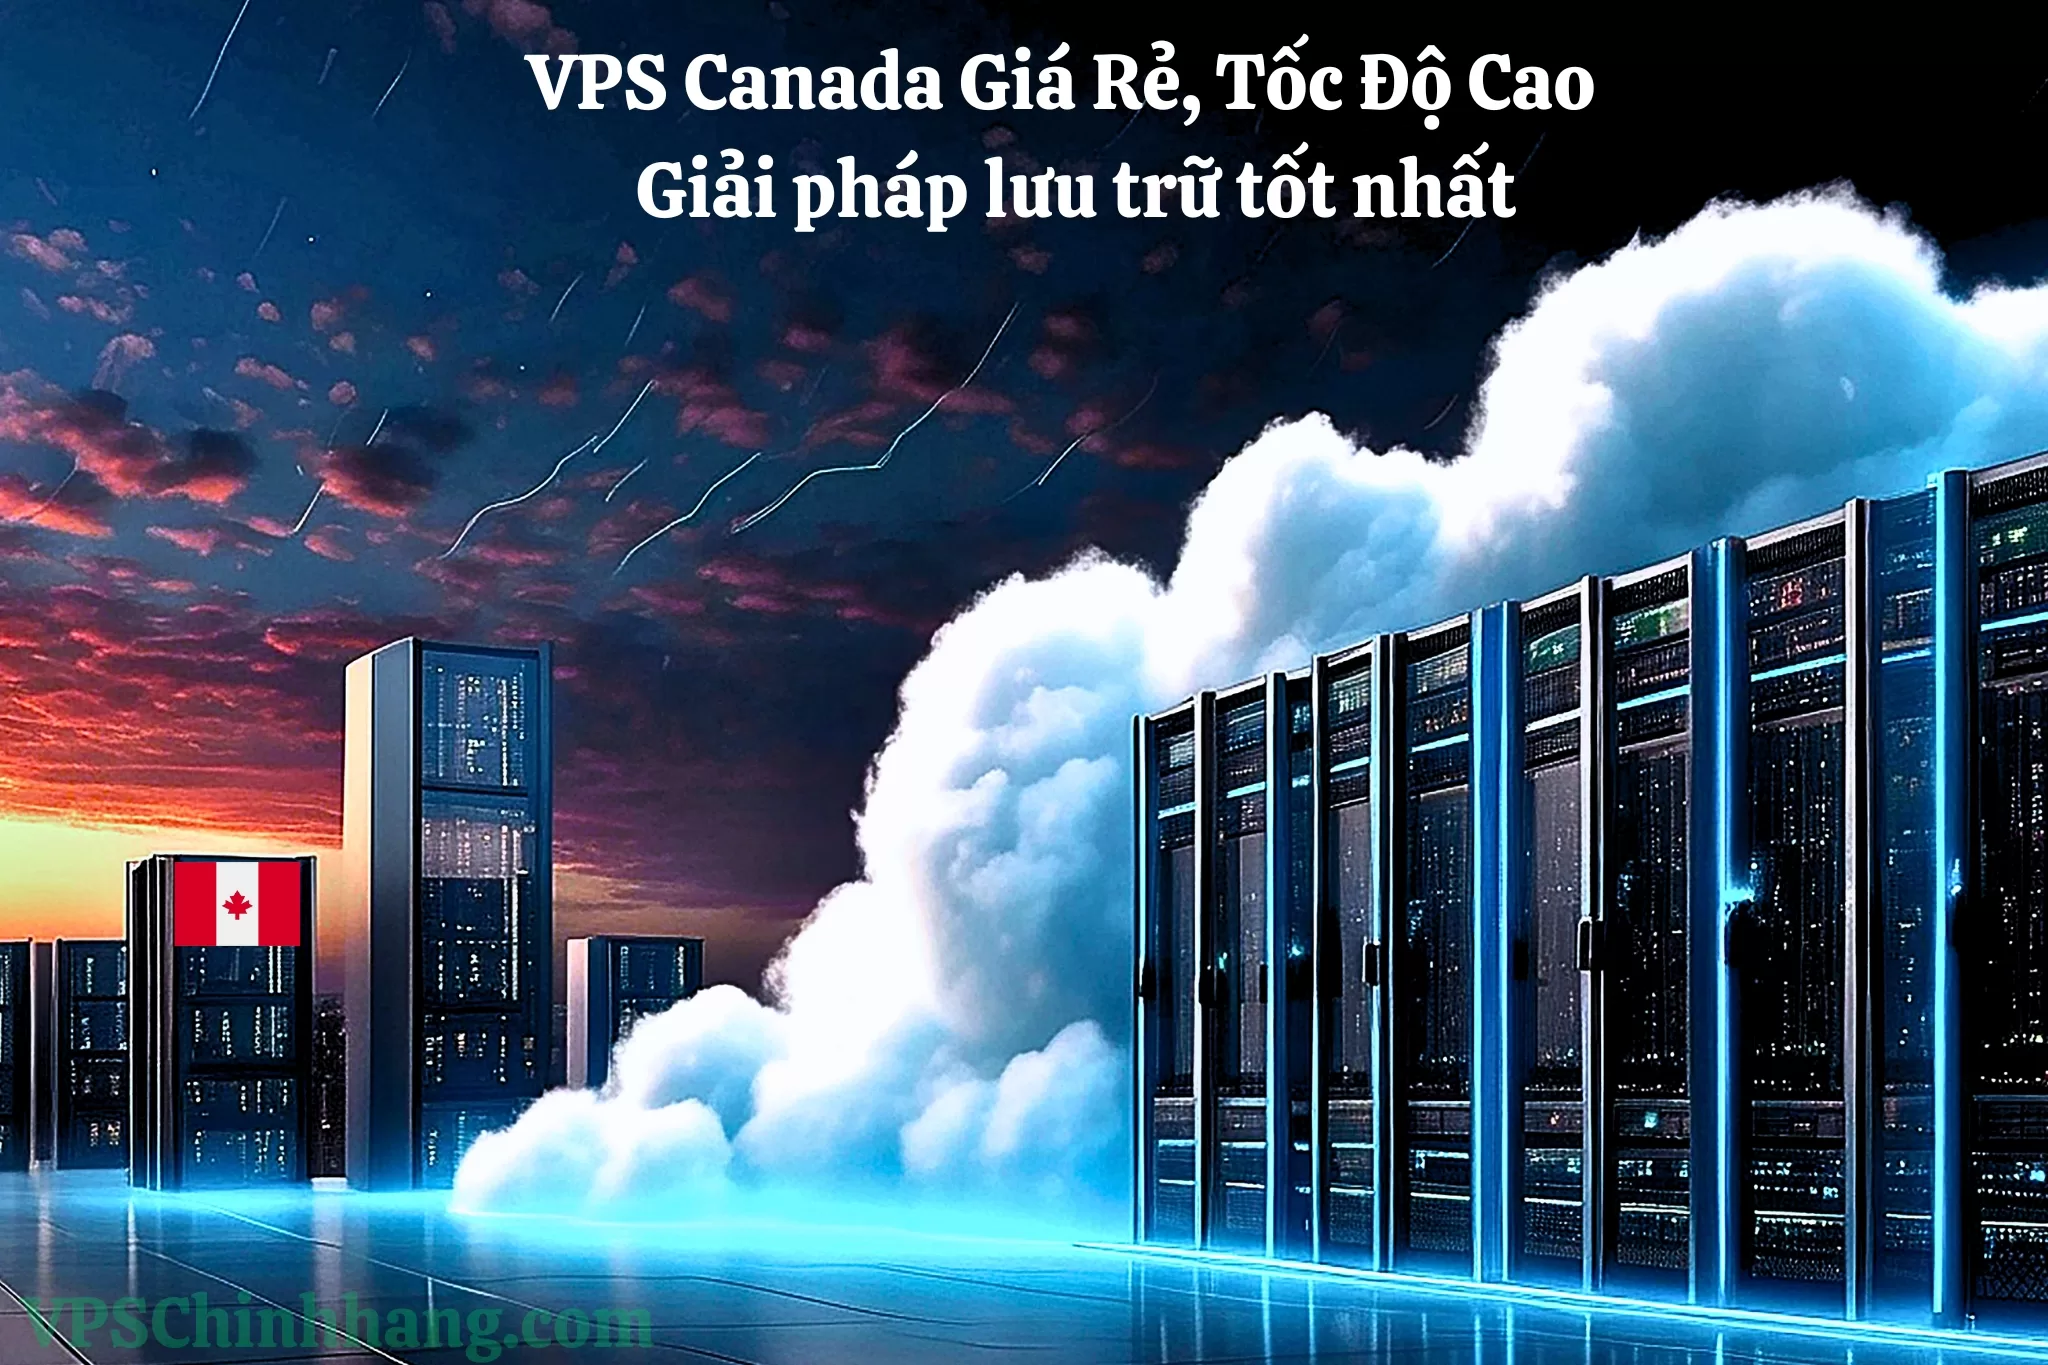 VPS Canada Giá Rẻ, Tốc Độ Cao - Giải pháp lưu trữ tốt nhất